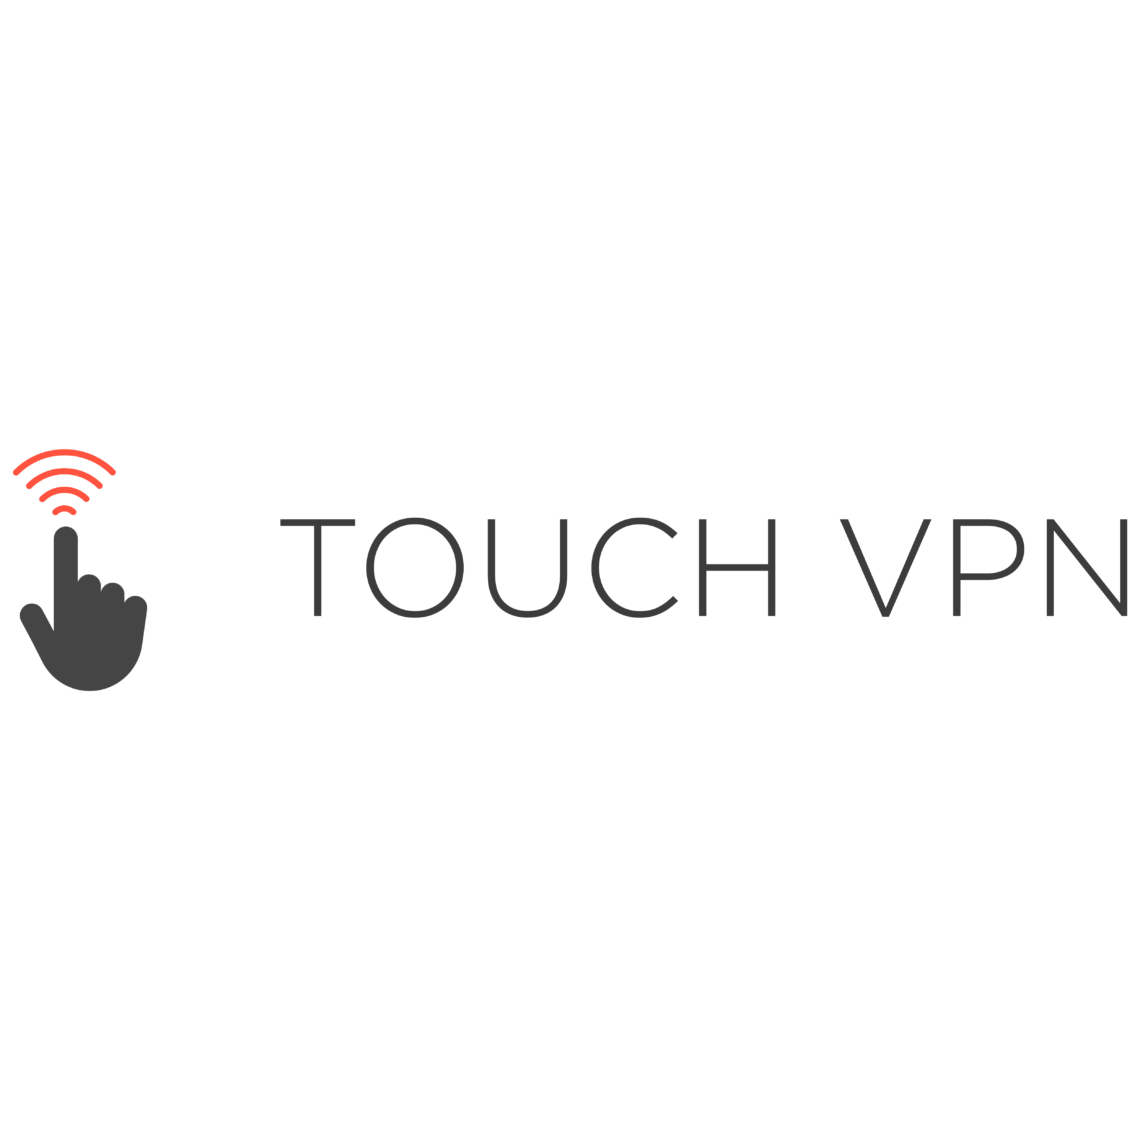 touchvpn logo